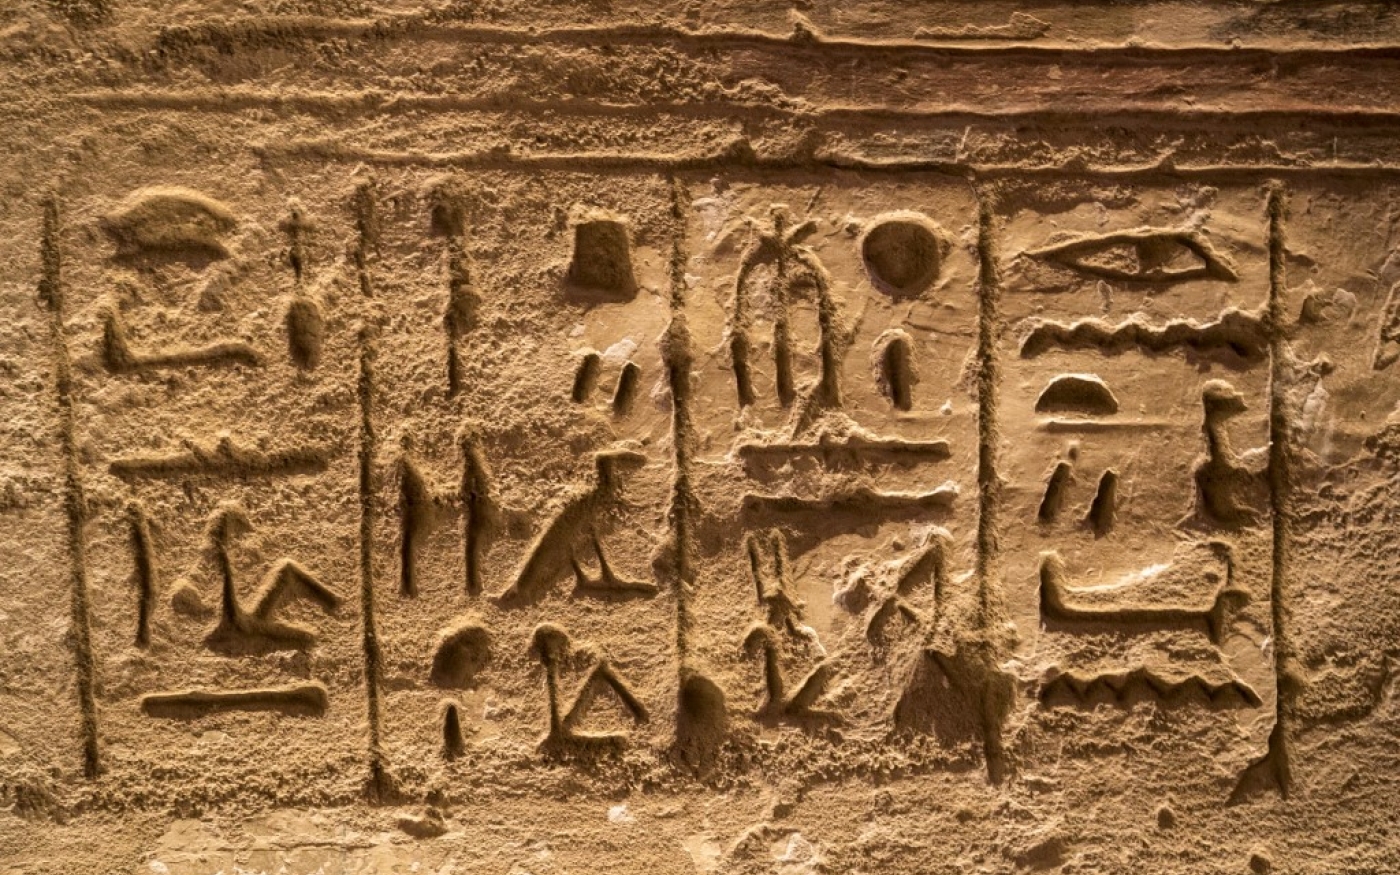  Une photo prise le 4 janvier 2021 montre des hiéroglyphes à l’intérieur du temple de Ramsès II sur le site archéologique d’Abou Simbel, dans le sud de l’Égypte (AFP/Khaled Desouki)